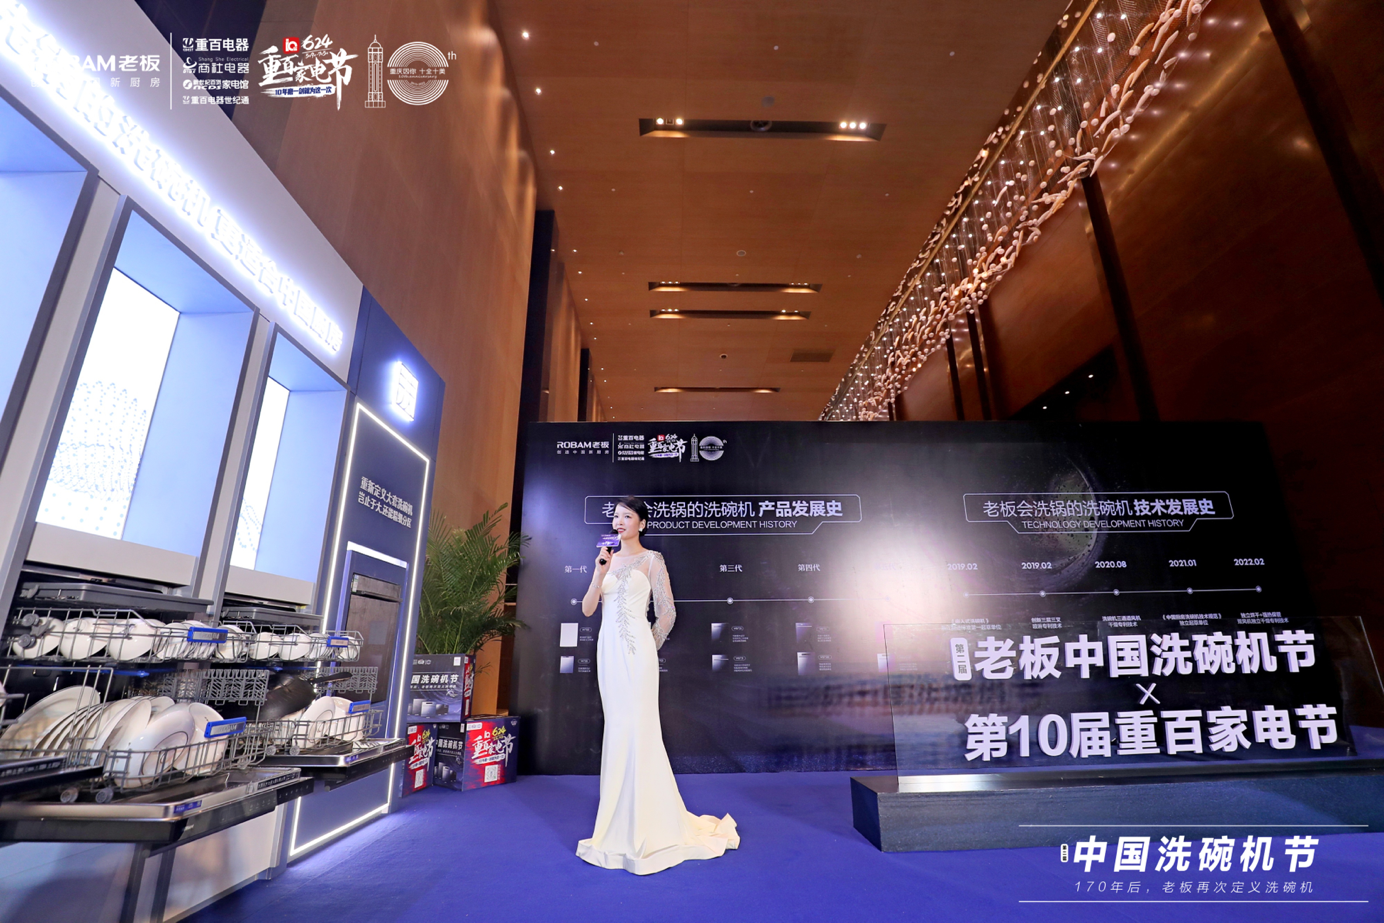 老板电器联合重百电器开启第二届中国洗碗机节发布会